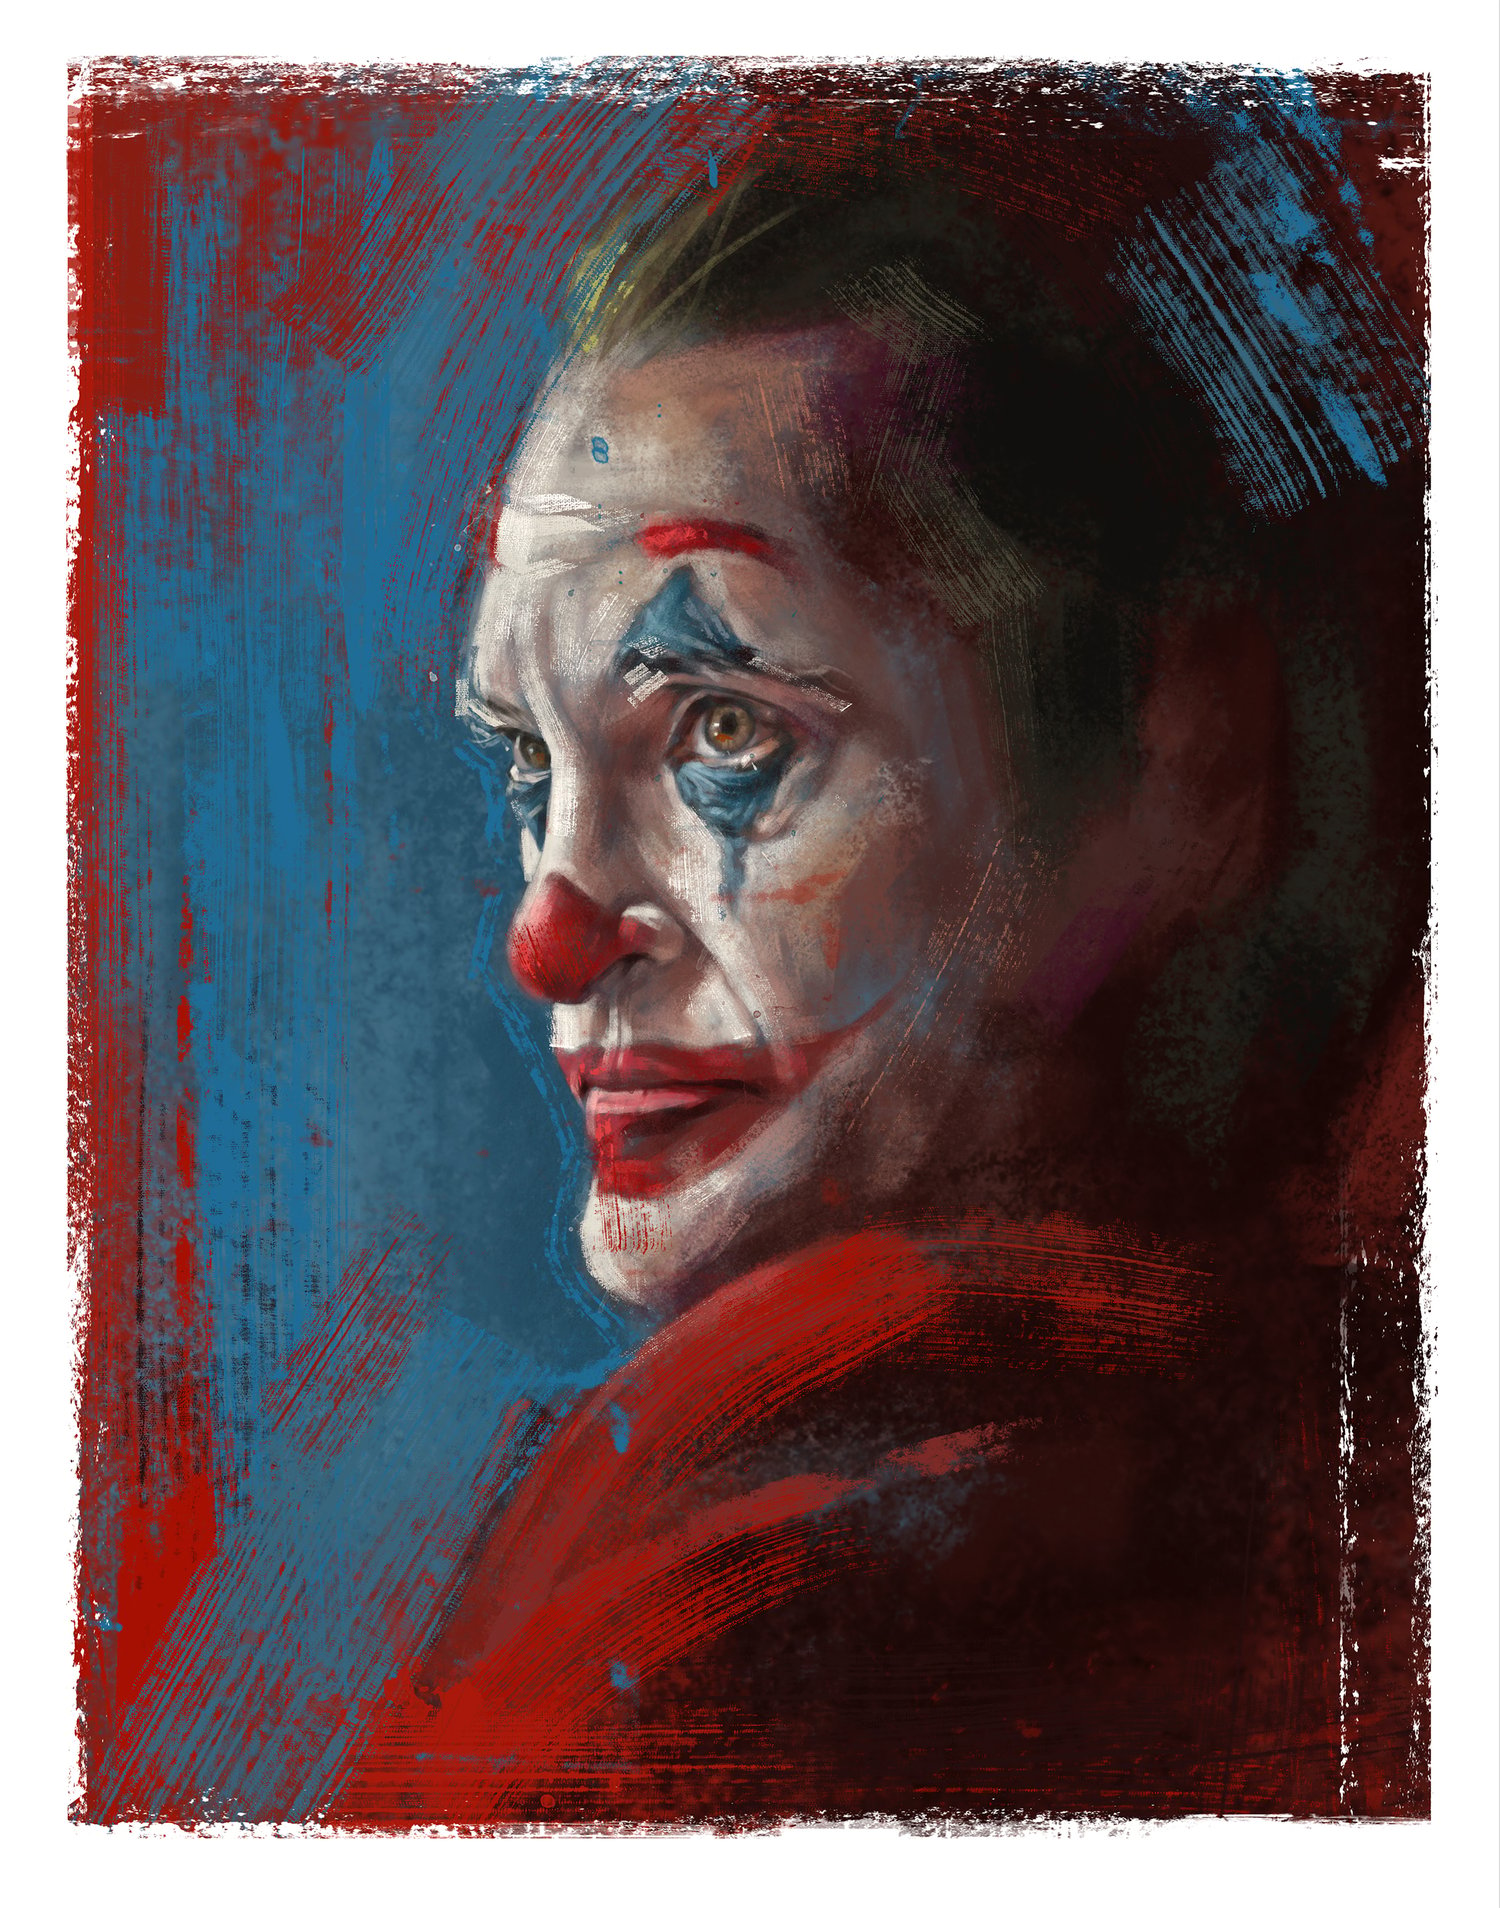 Image of The Joker